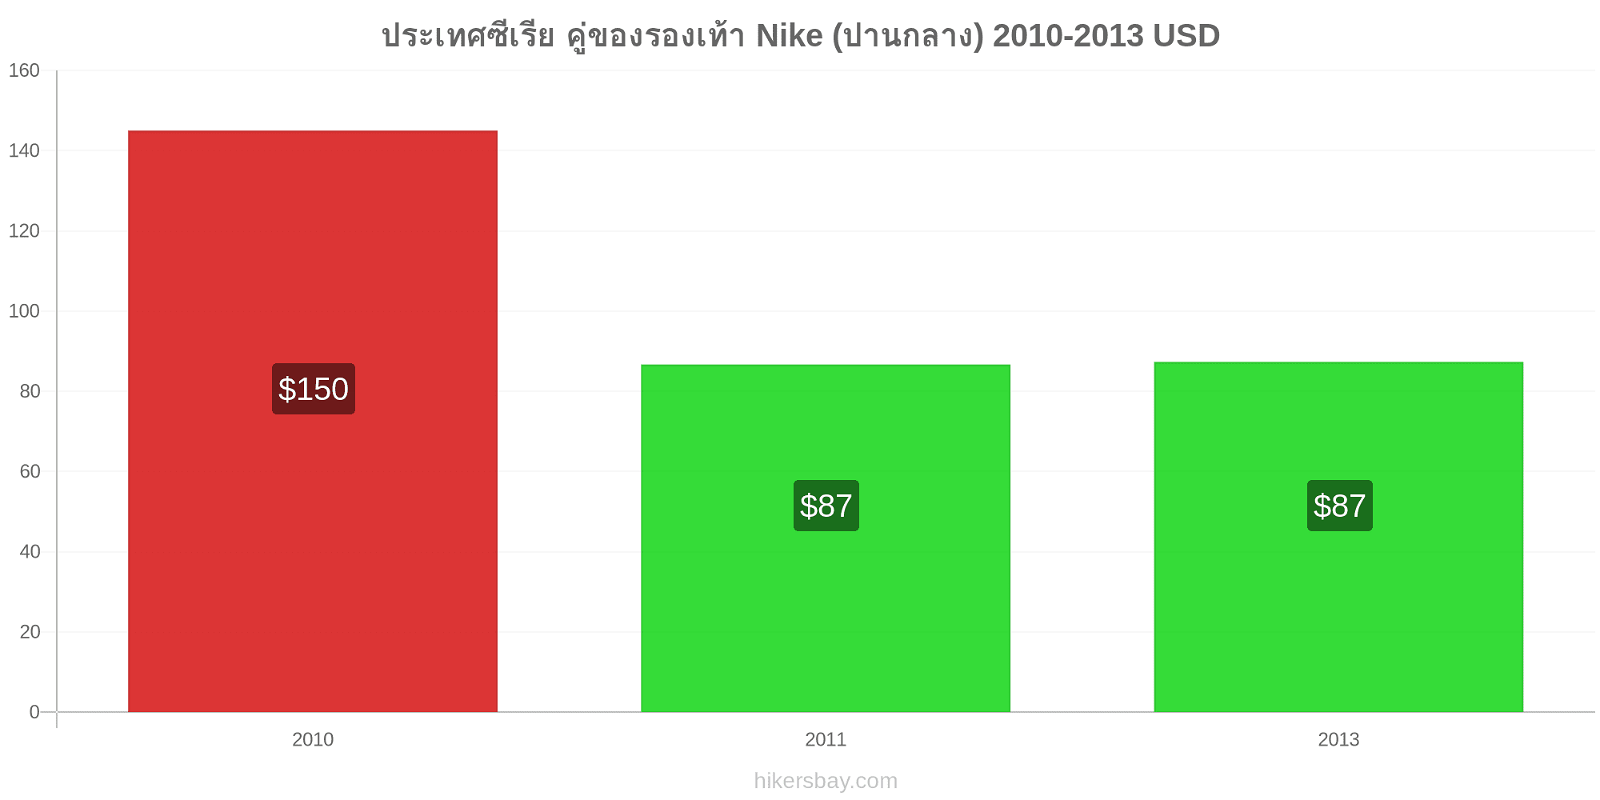 ประเทศซีเรีย การเปลี่ยนแปลงราคา คู่ของรองเท้า Nike (ปานกลาง) hikersbay.com